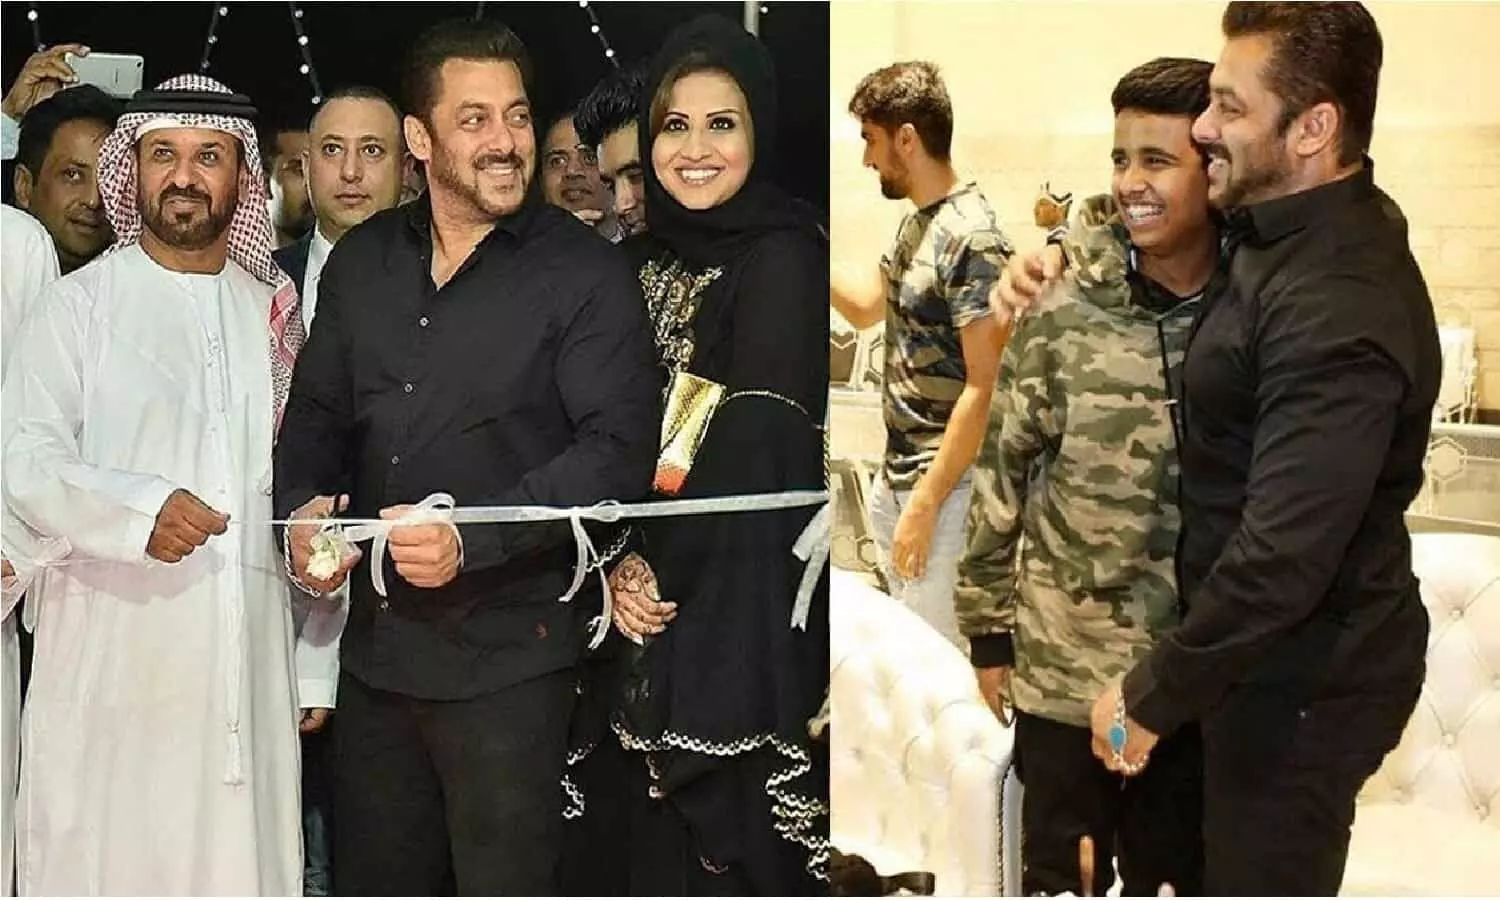 एक्टर सलमान खान की पत्नी और बच्चो की तस्वीरें आई सामने, दुबई में जी रहे आलीशान जिंदगी | Pictures of actor Salman Khan's wife and children surfaced, living a luxurious life in